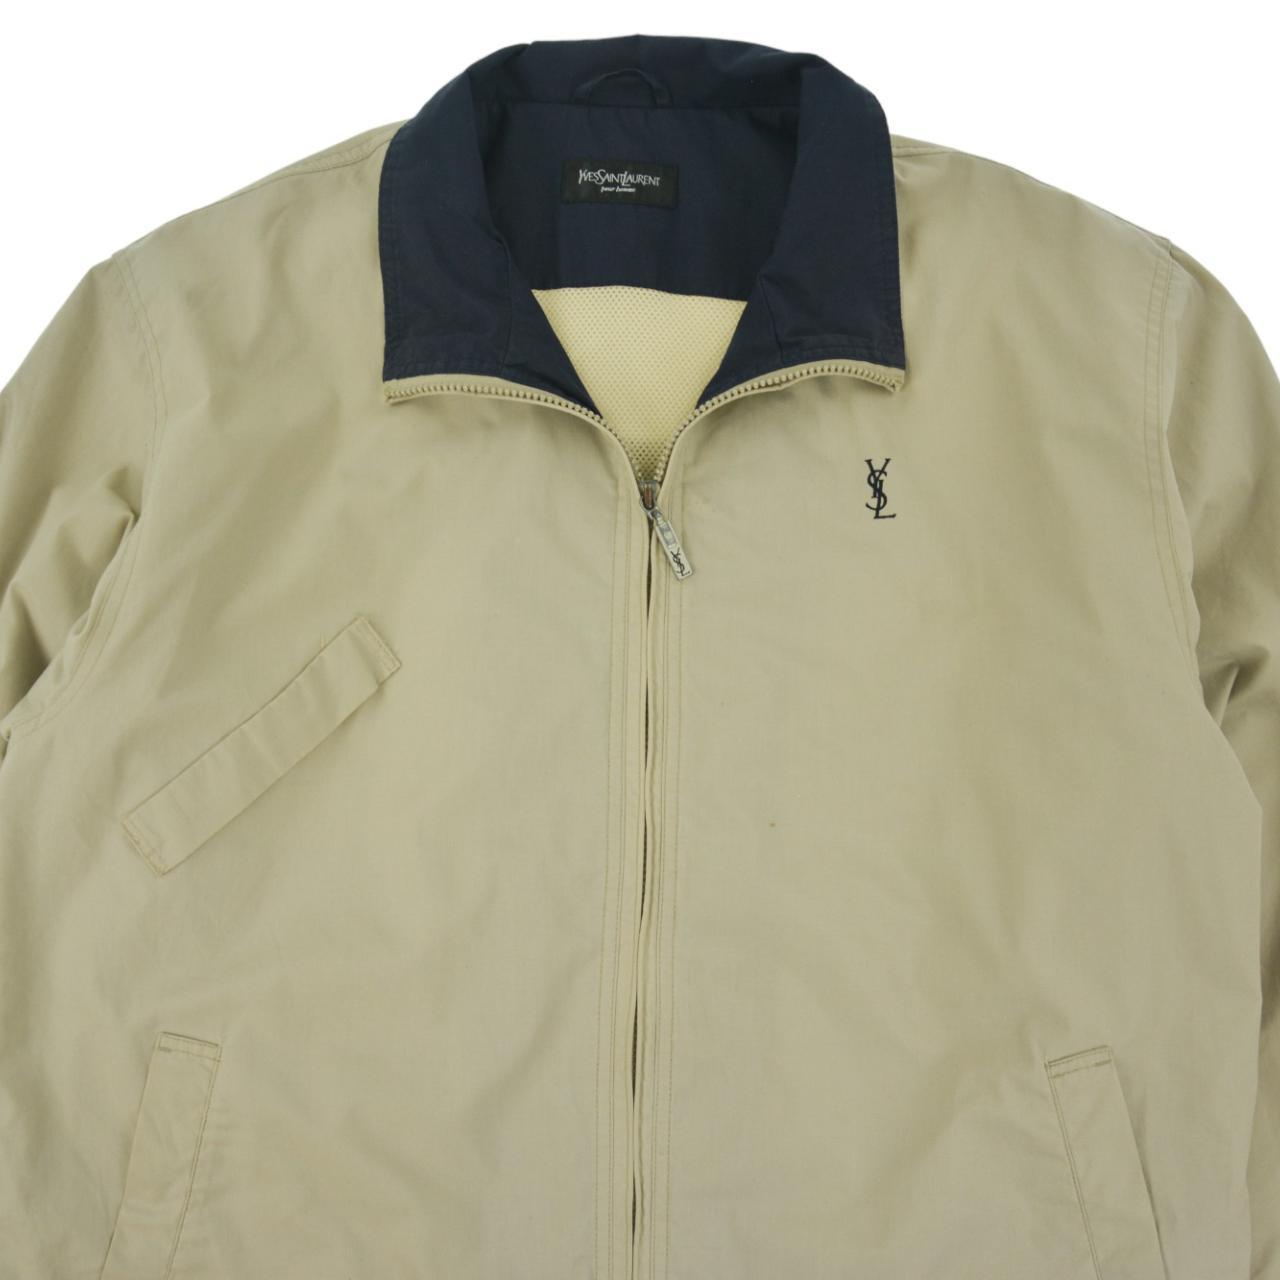 Vintage YSL Yves Saint Laurent Zip Up Jacket Size L - second wave 